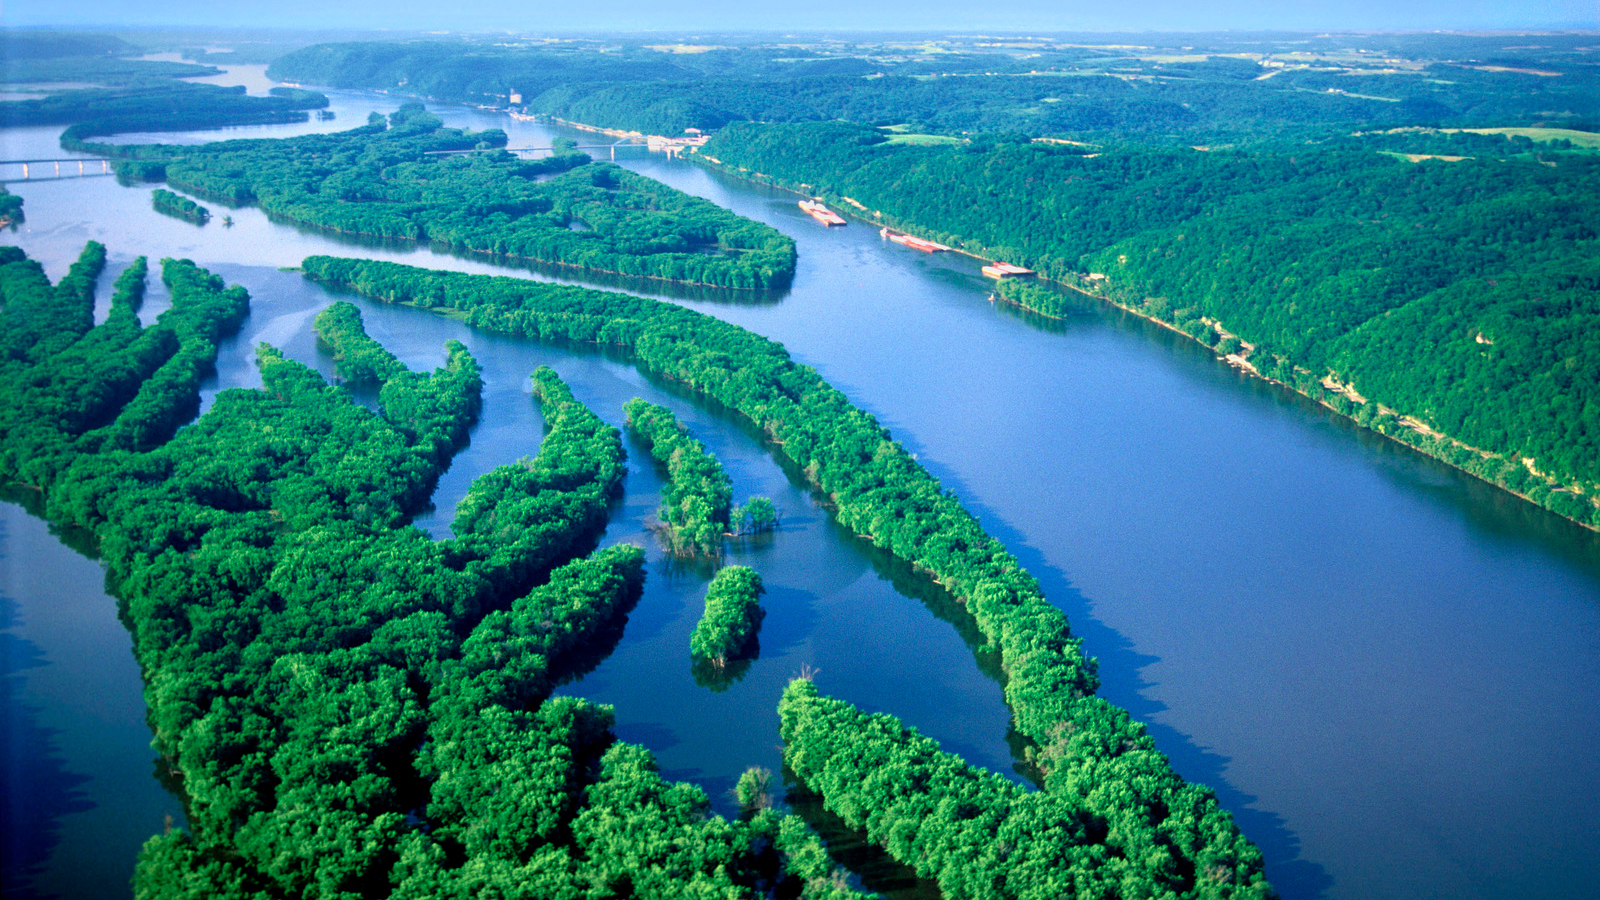 Mississippi / Missouri River